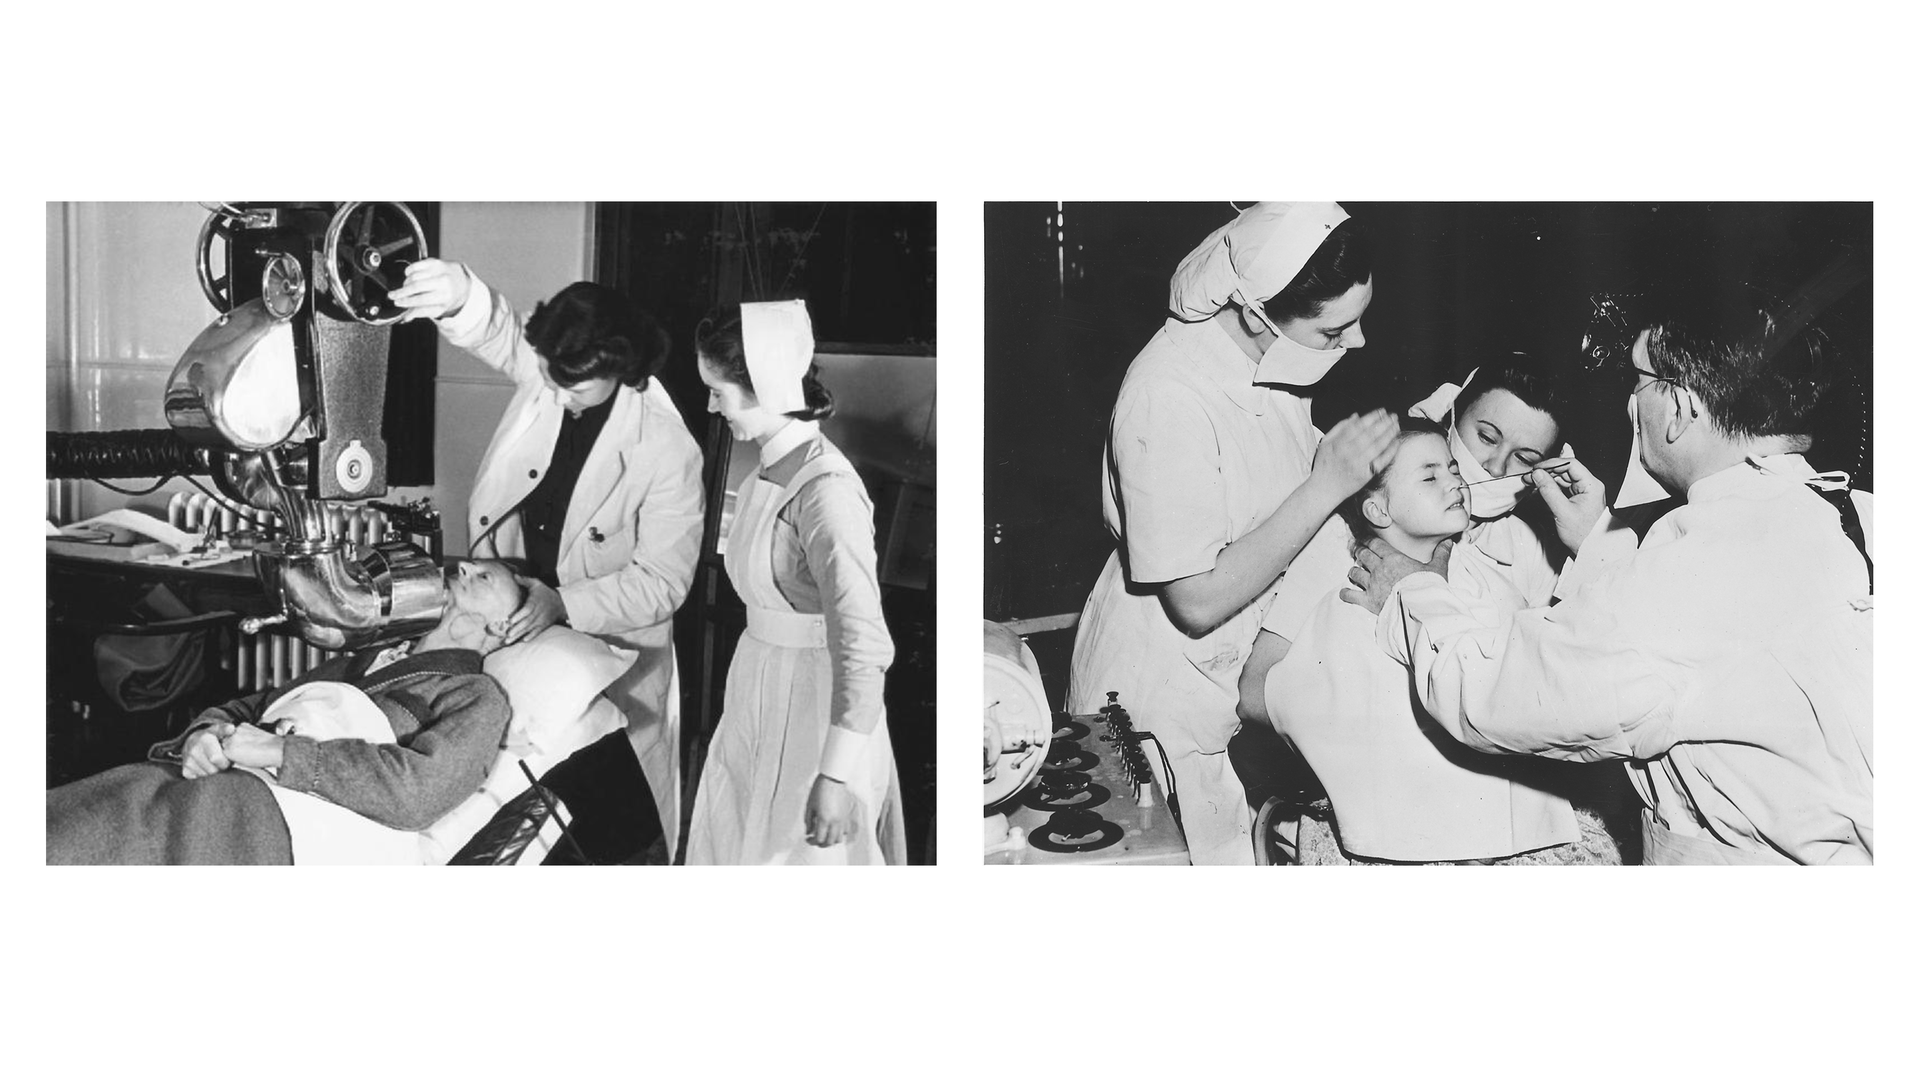 Zdjęcia przedstawiające dawne pielęgniarki i lekarzy używający radu do leczenia guzów i zmian na ówczesnych sprzętach do radioterapii